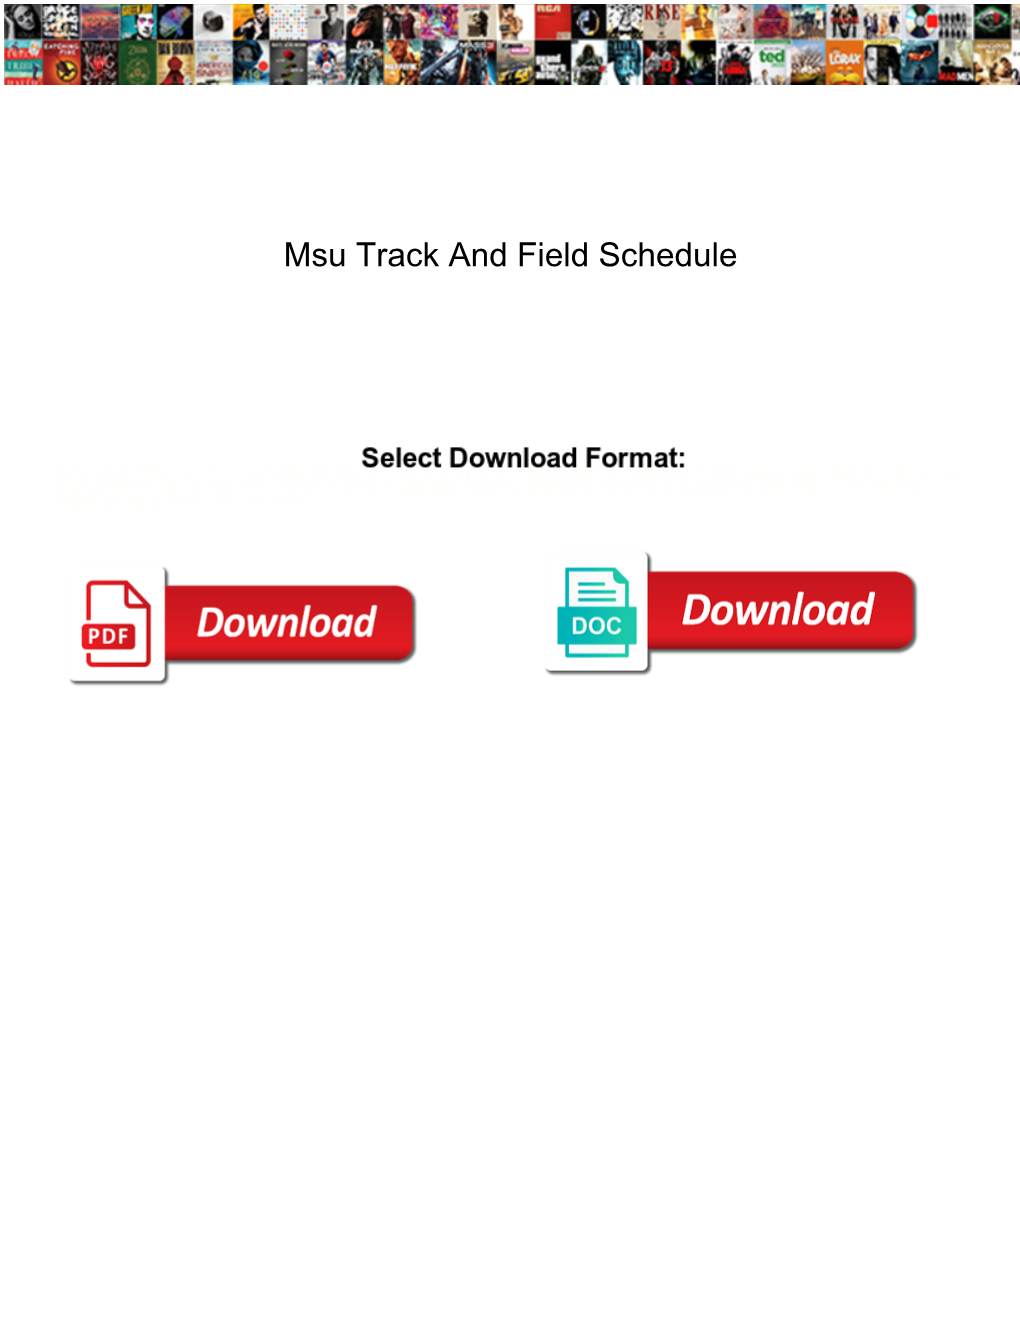 Msu Track and Field Schedule